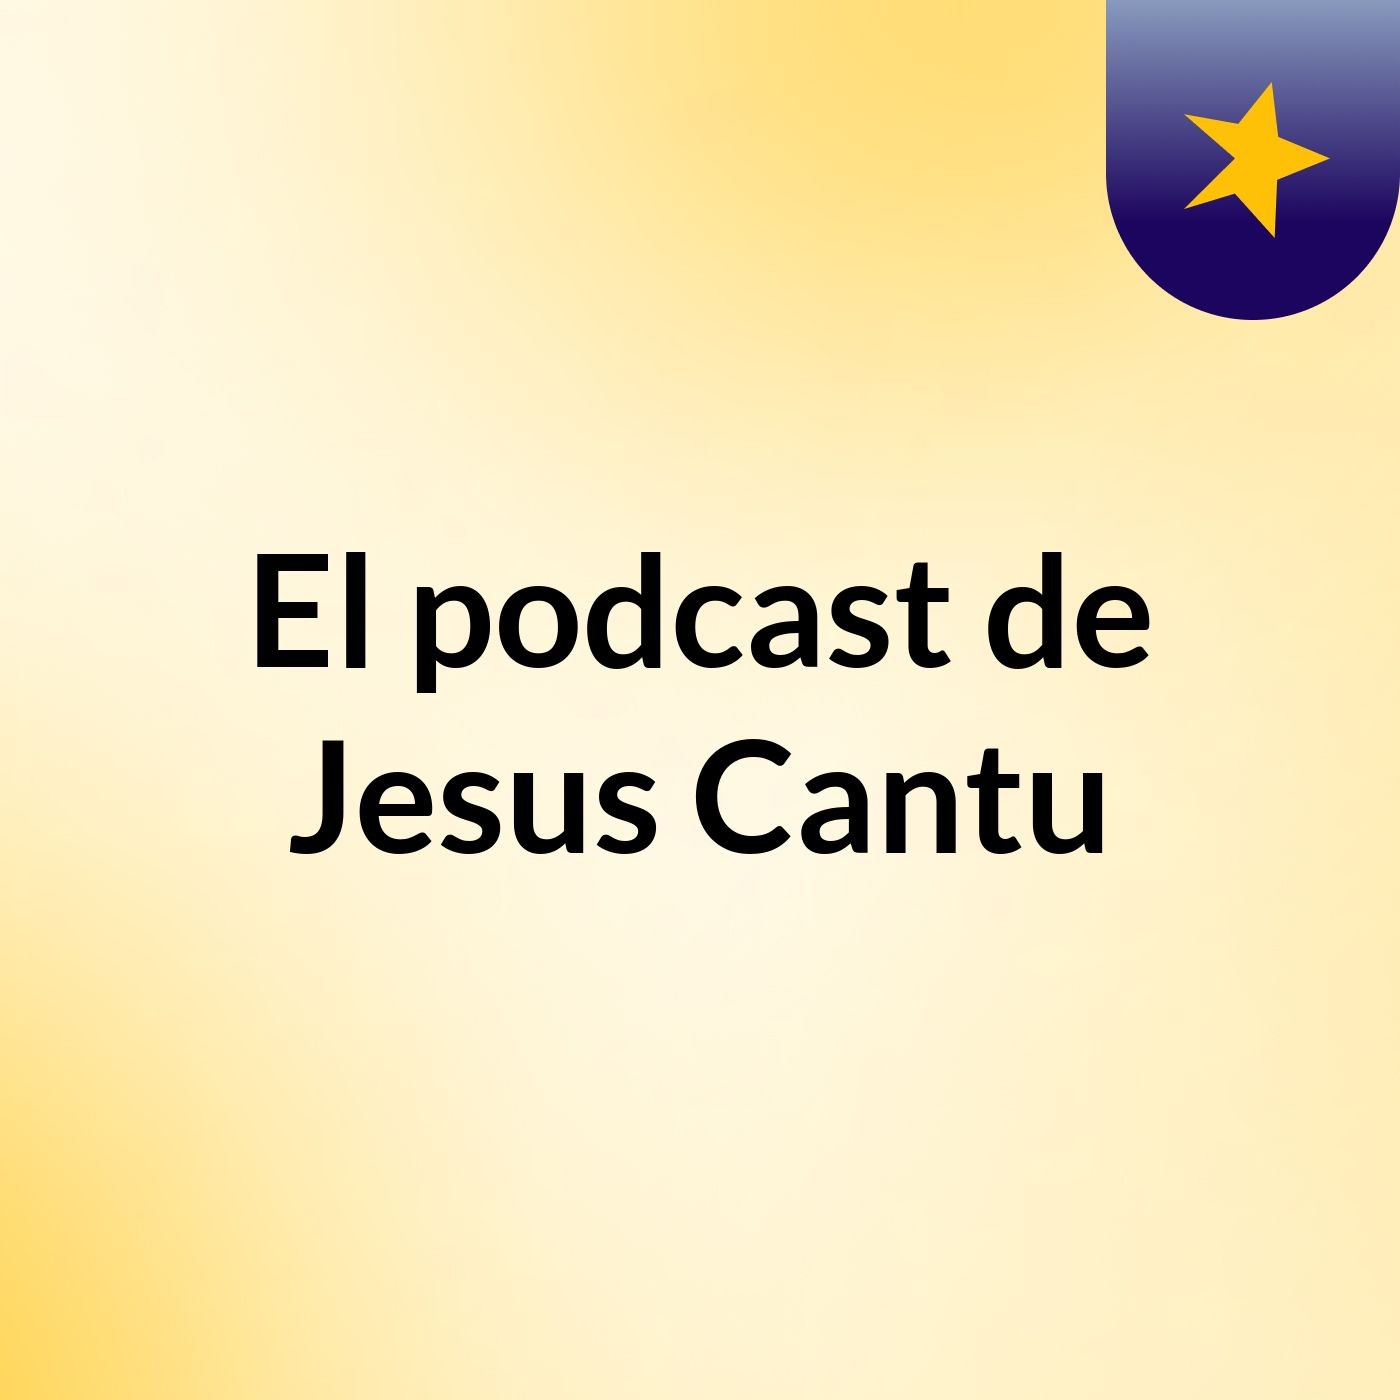 El podcast de Jesus Cantu